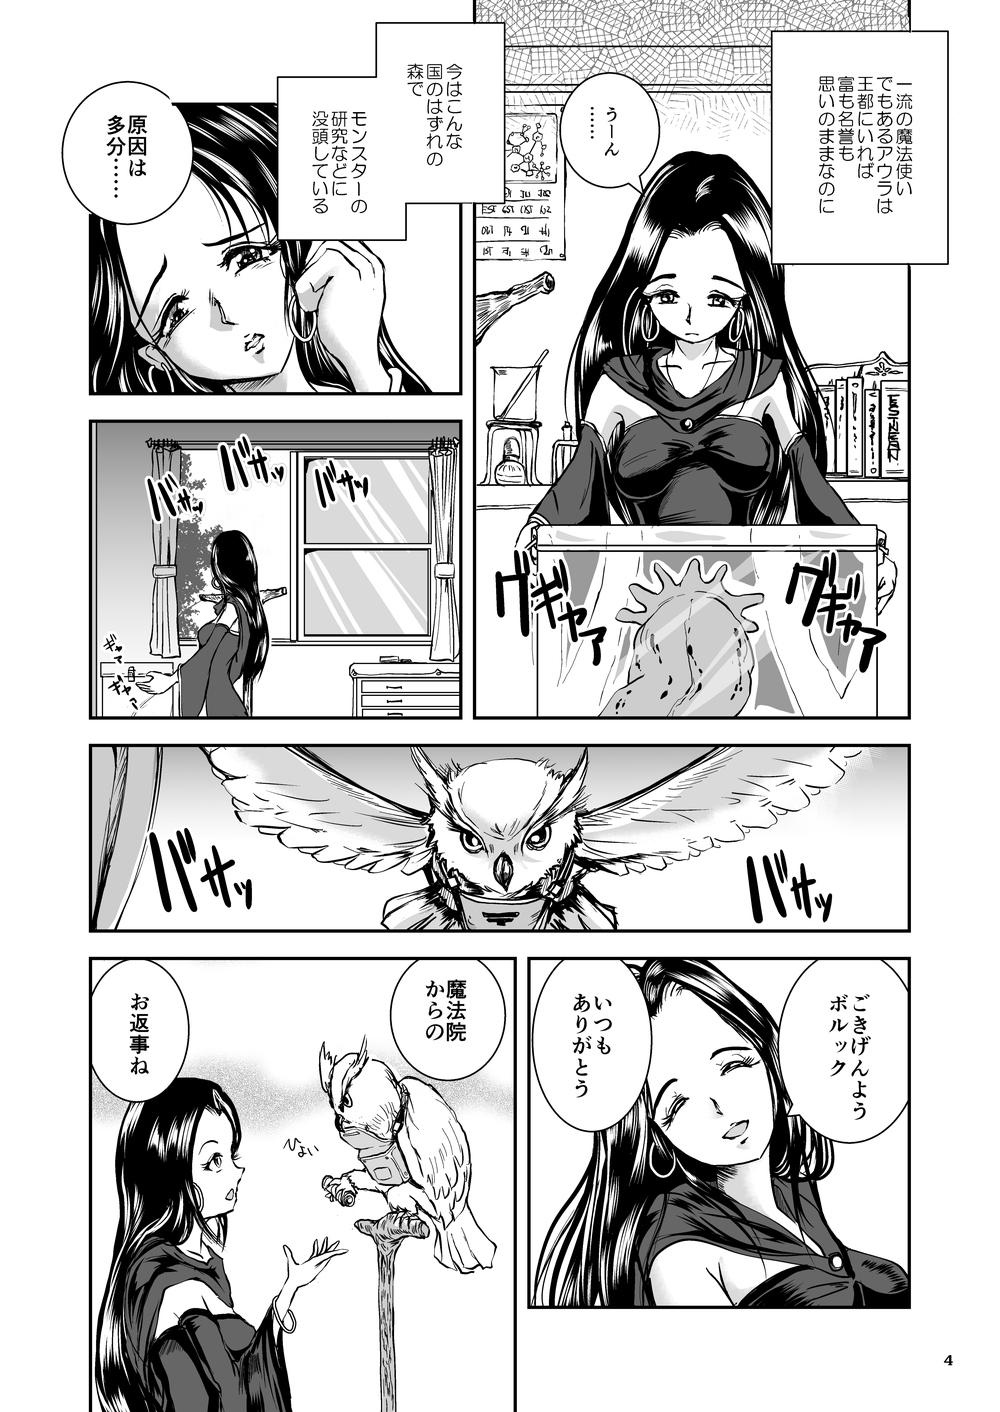 Oonamekuji to Kurokami no Mahoutsukai - Parasitized Giant Slugs V.S. Sorceress of the Black Hair as Aura 50